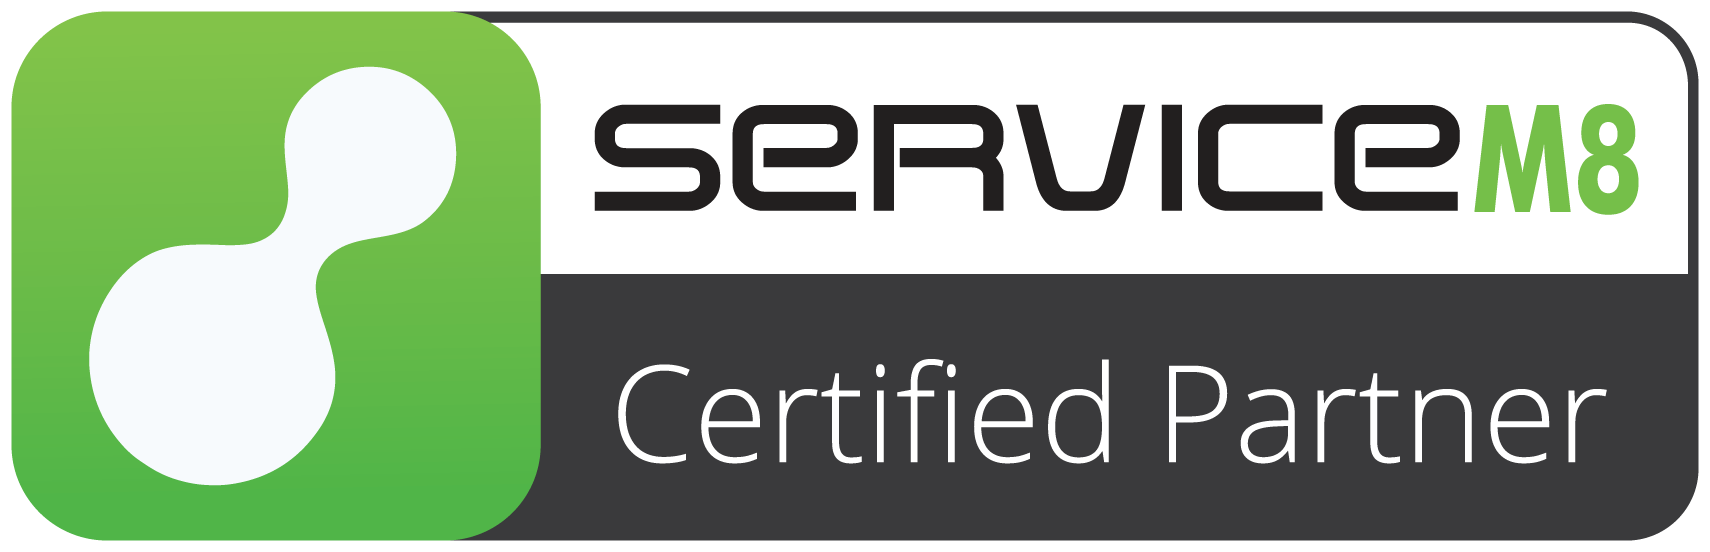 Logo - ServiceM8 Certified Partner - 37KB